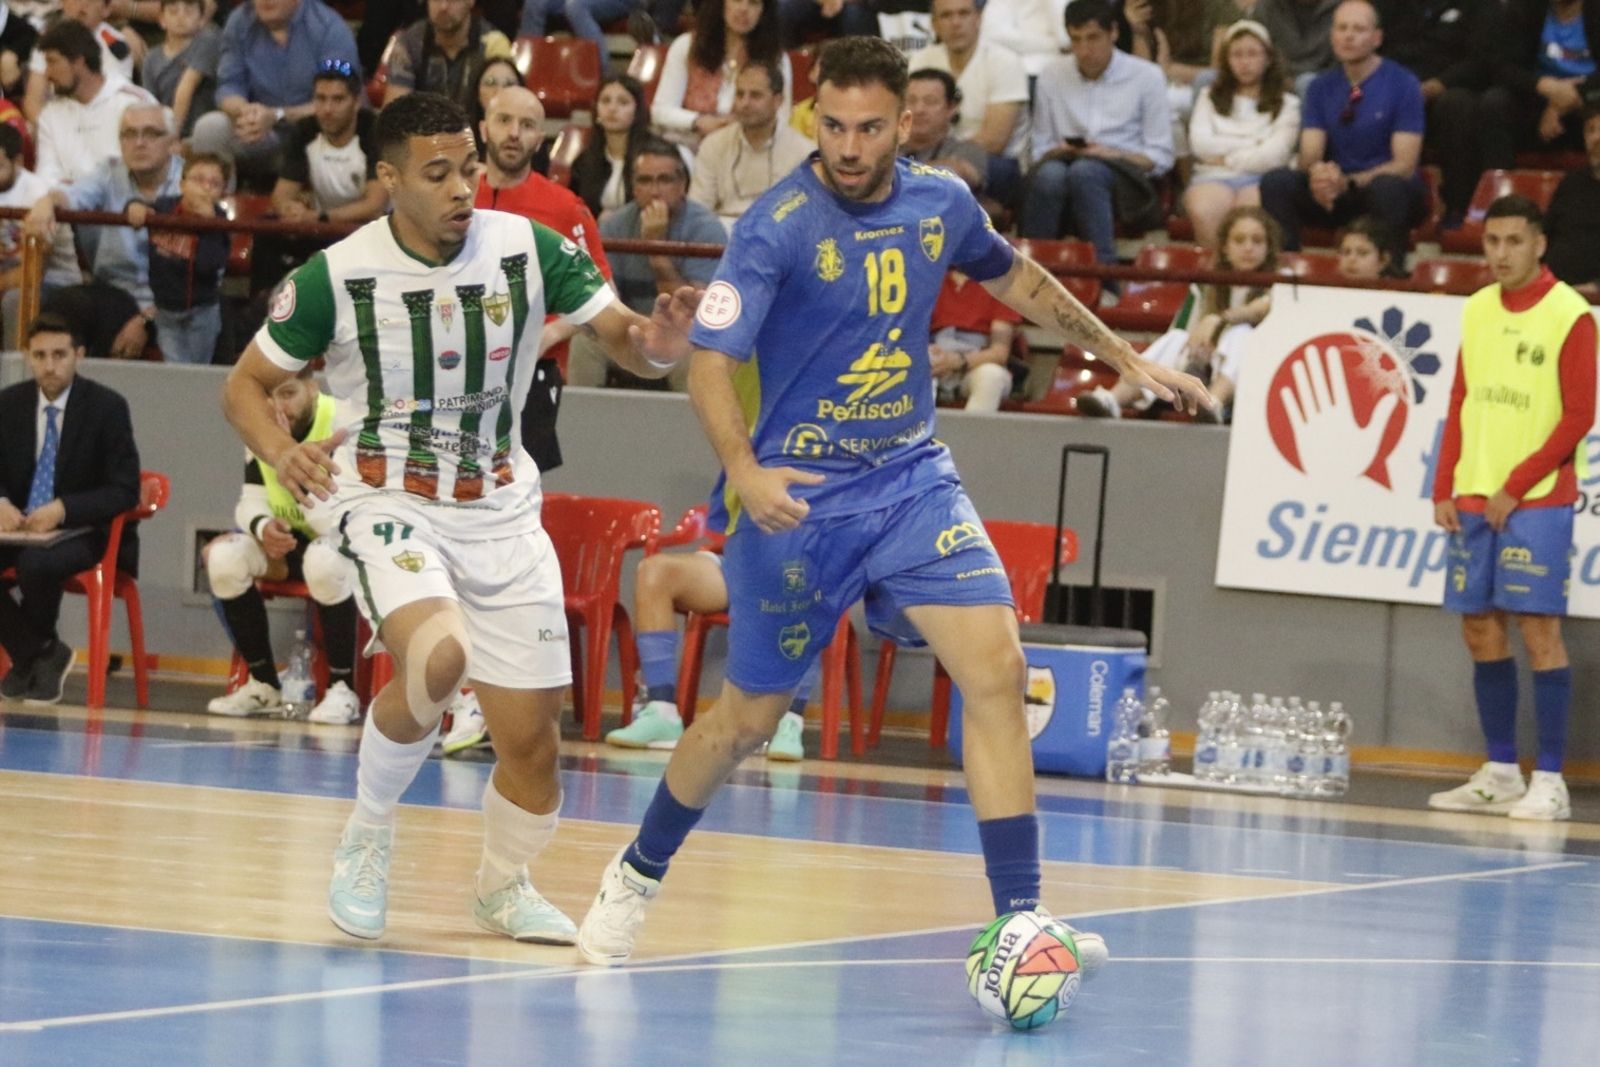 Córdoba Futsal-Peñiscola: el partído de Vista Alegre en imágenes